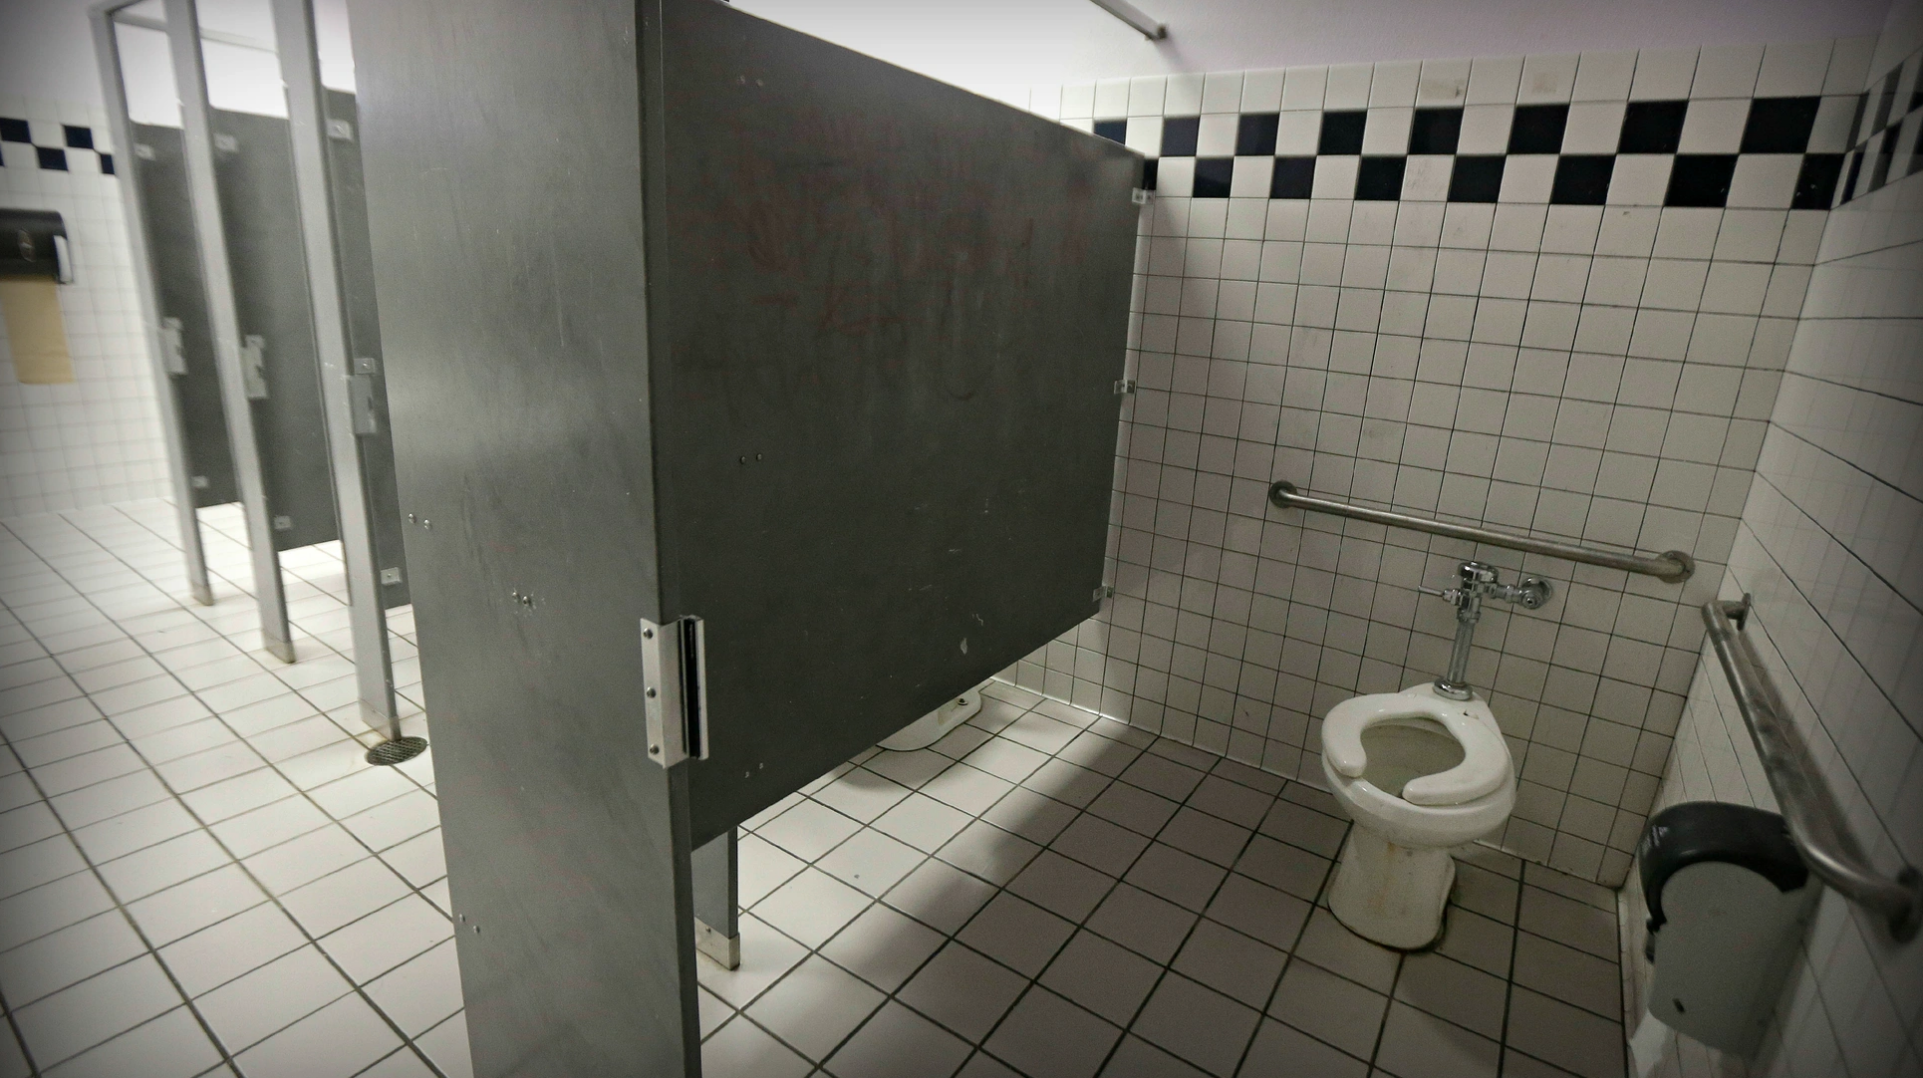 US District Court temporarily blocks enforcement of Idaho transgender bathroom law Local idahostatejournal